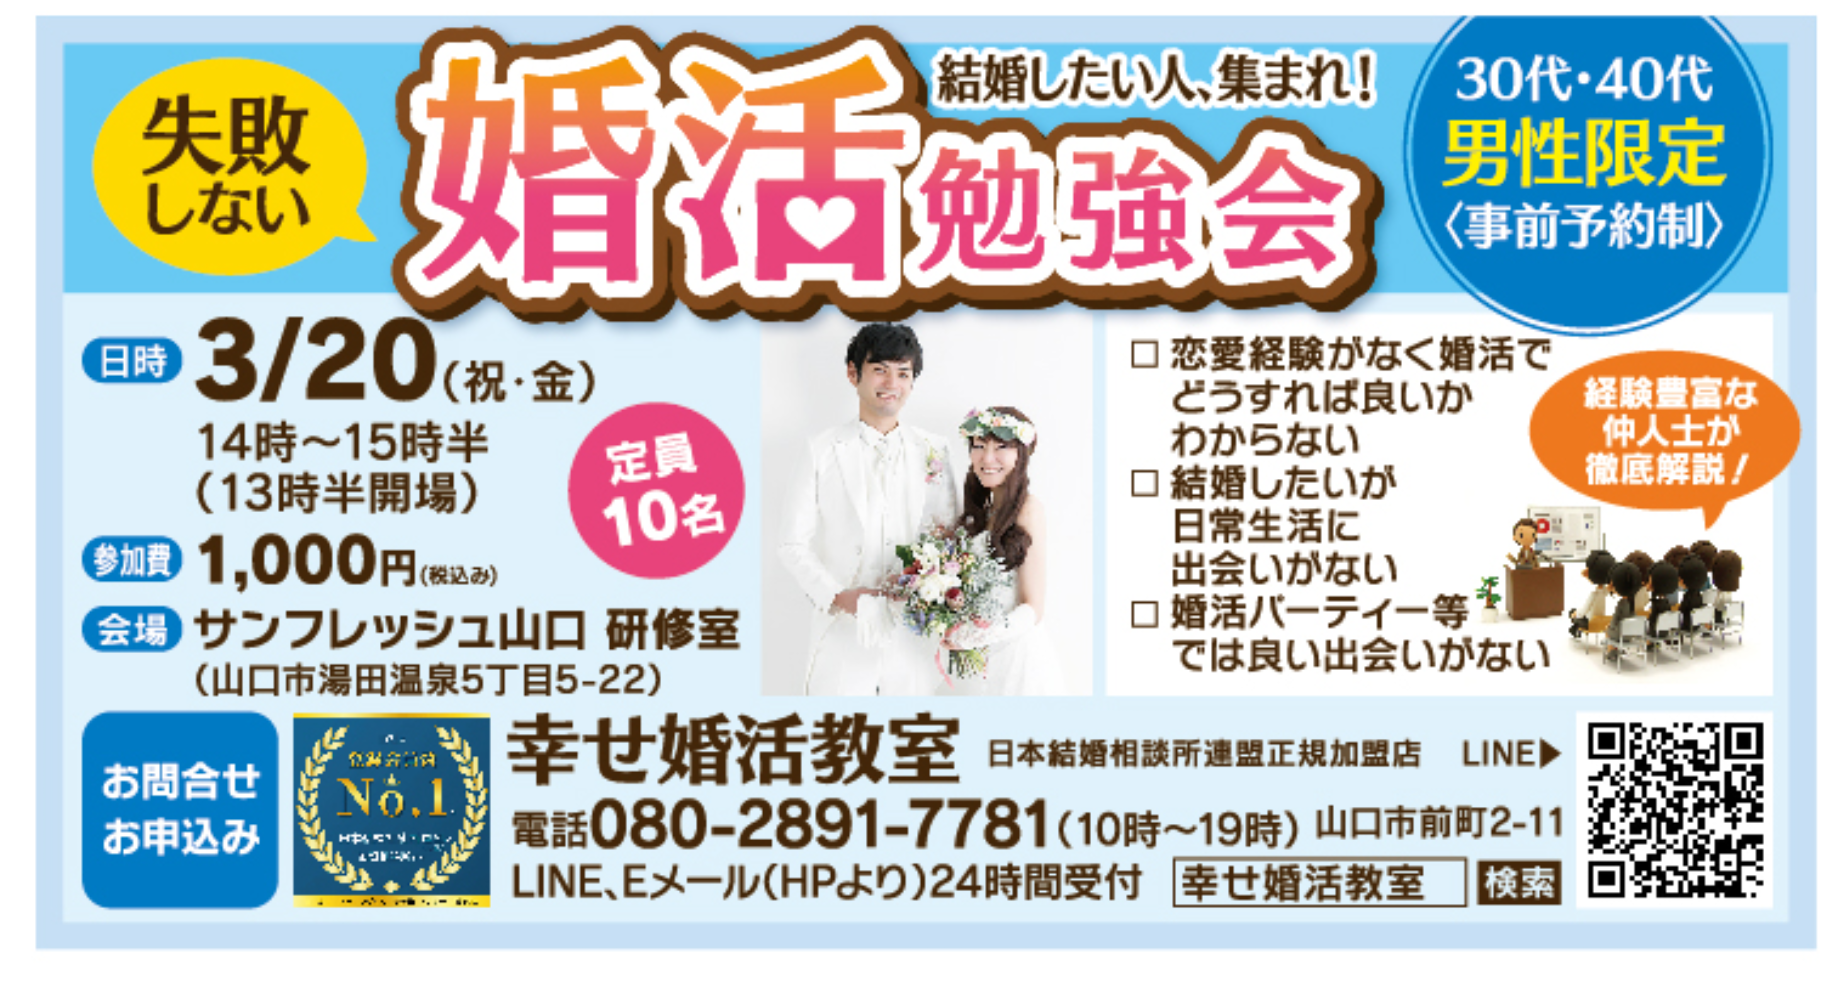 山口の結婚相談所幸せ婚活教室ブログ200320勉強会広告